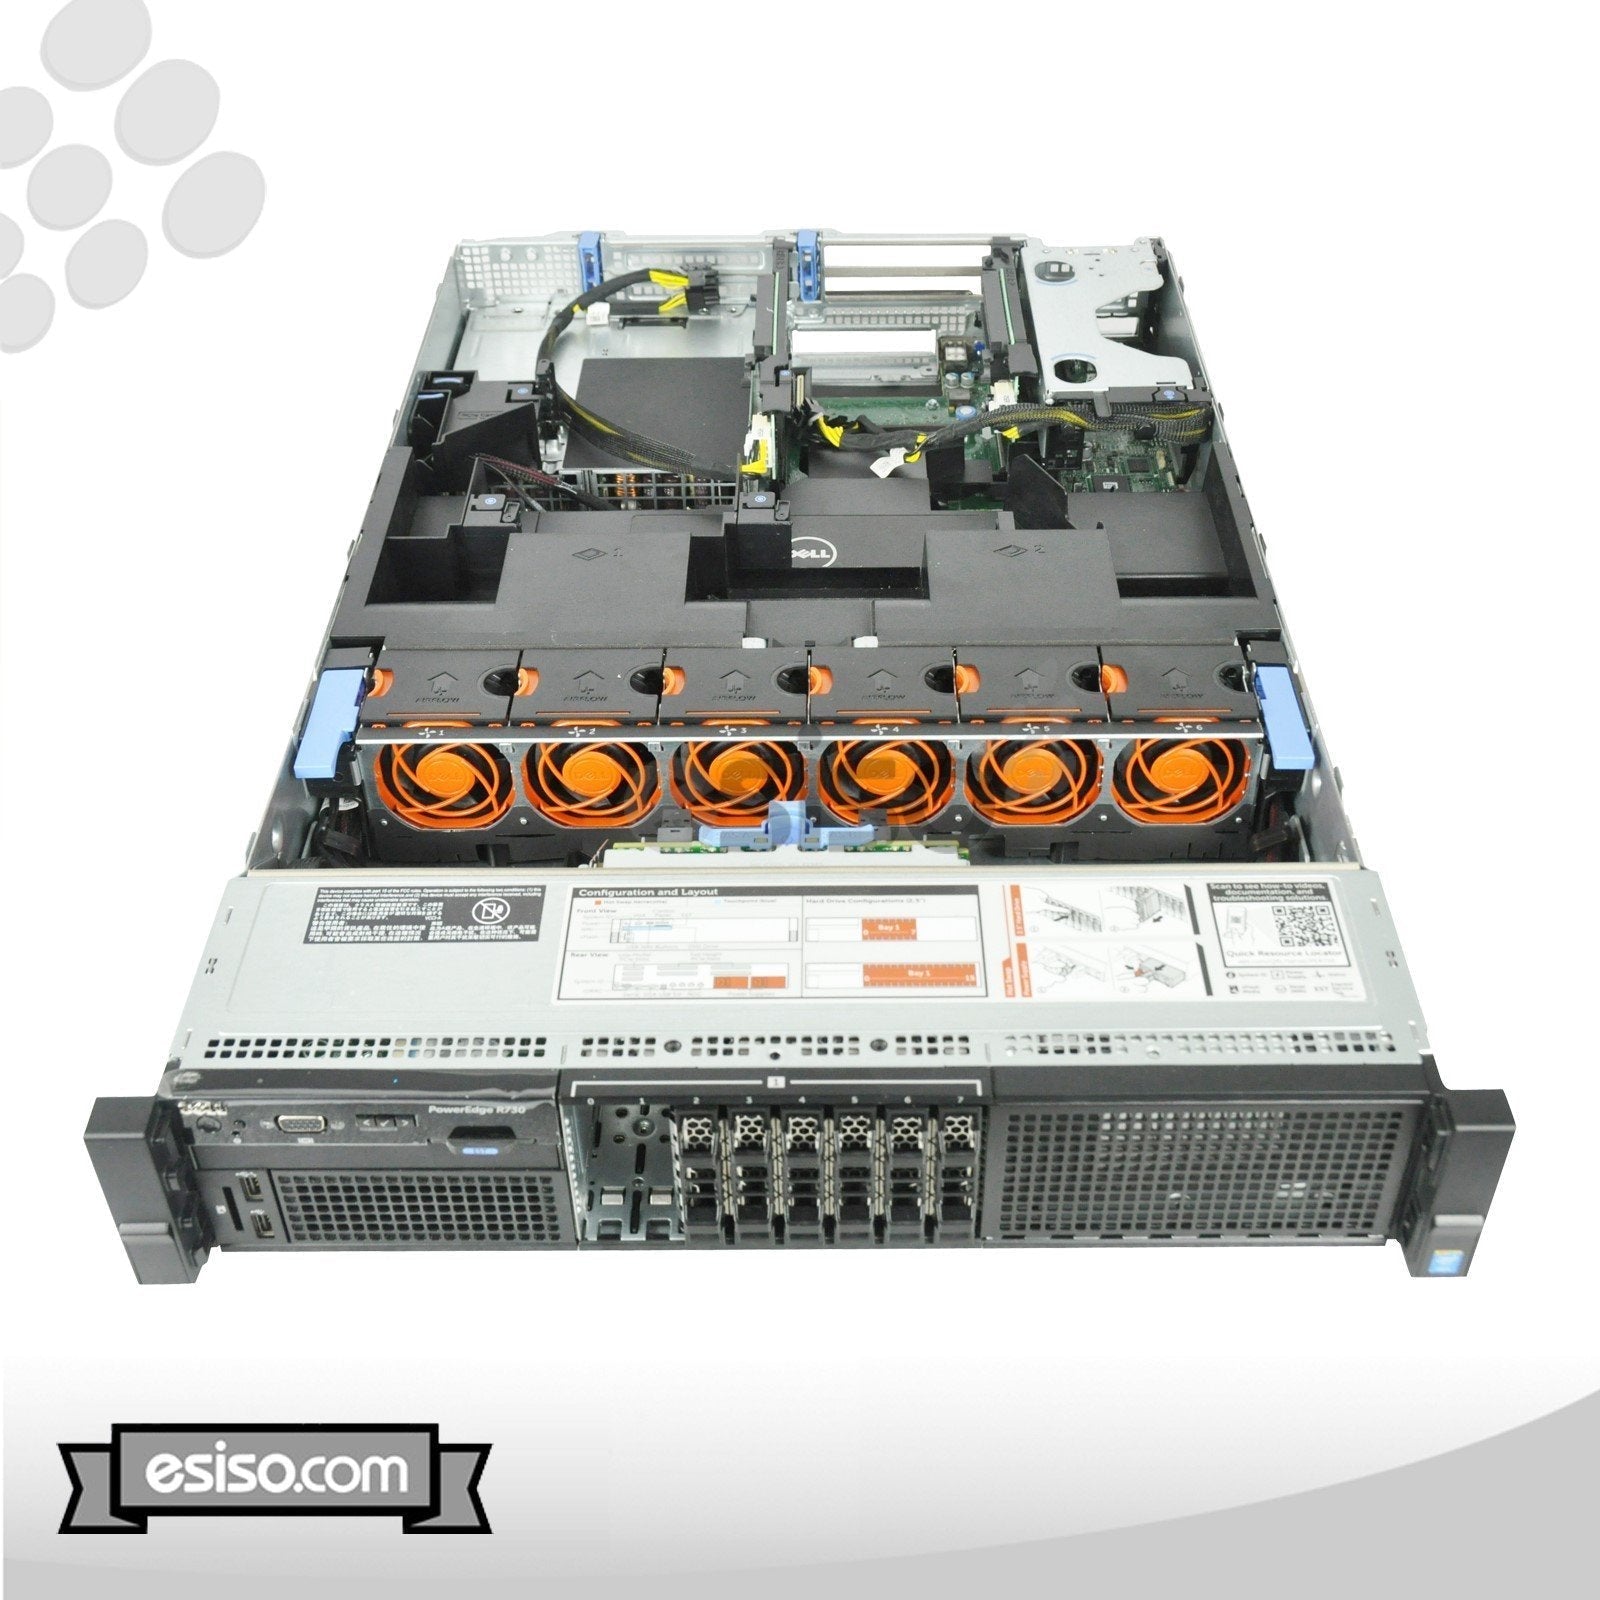 DELL POWEREDGE R730 8SFF 2x 6 CORE E5-2620v3 2.4GHz 32GB RAM 2x 600GB SAS H730